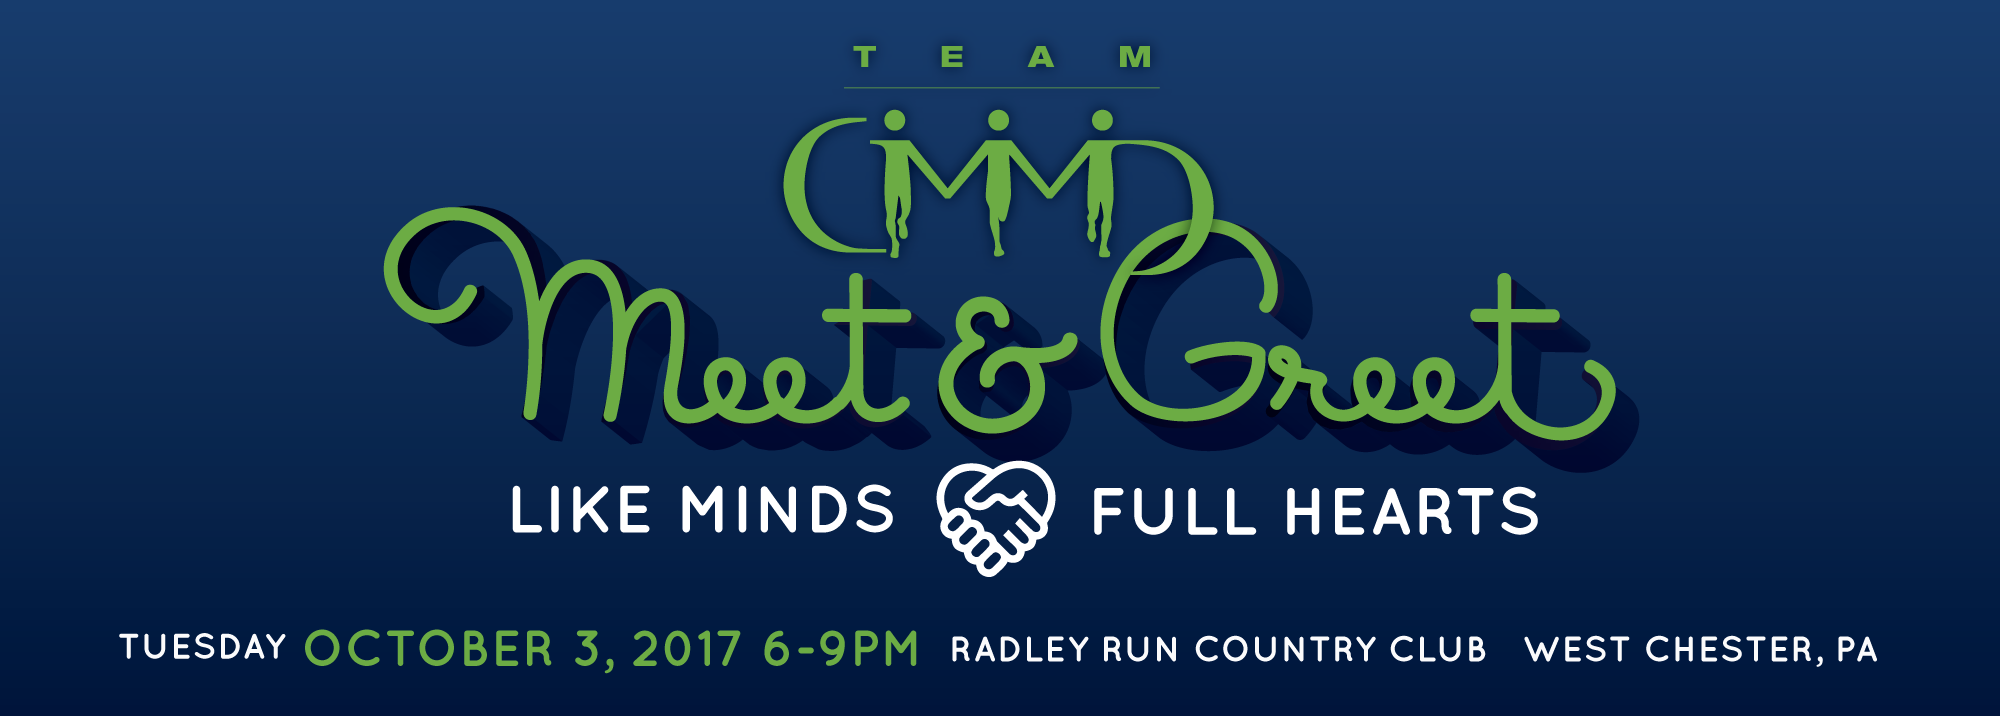 TeamCMMD_Meet&Greet2016_WebpageBanner